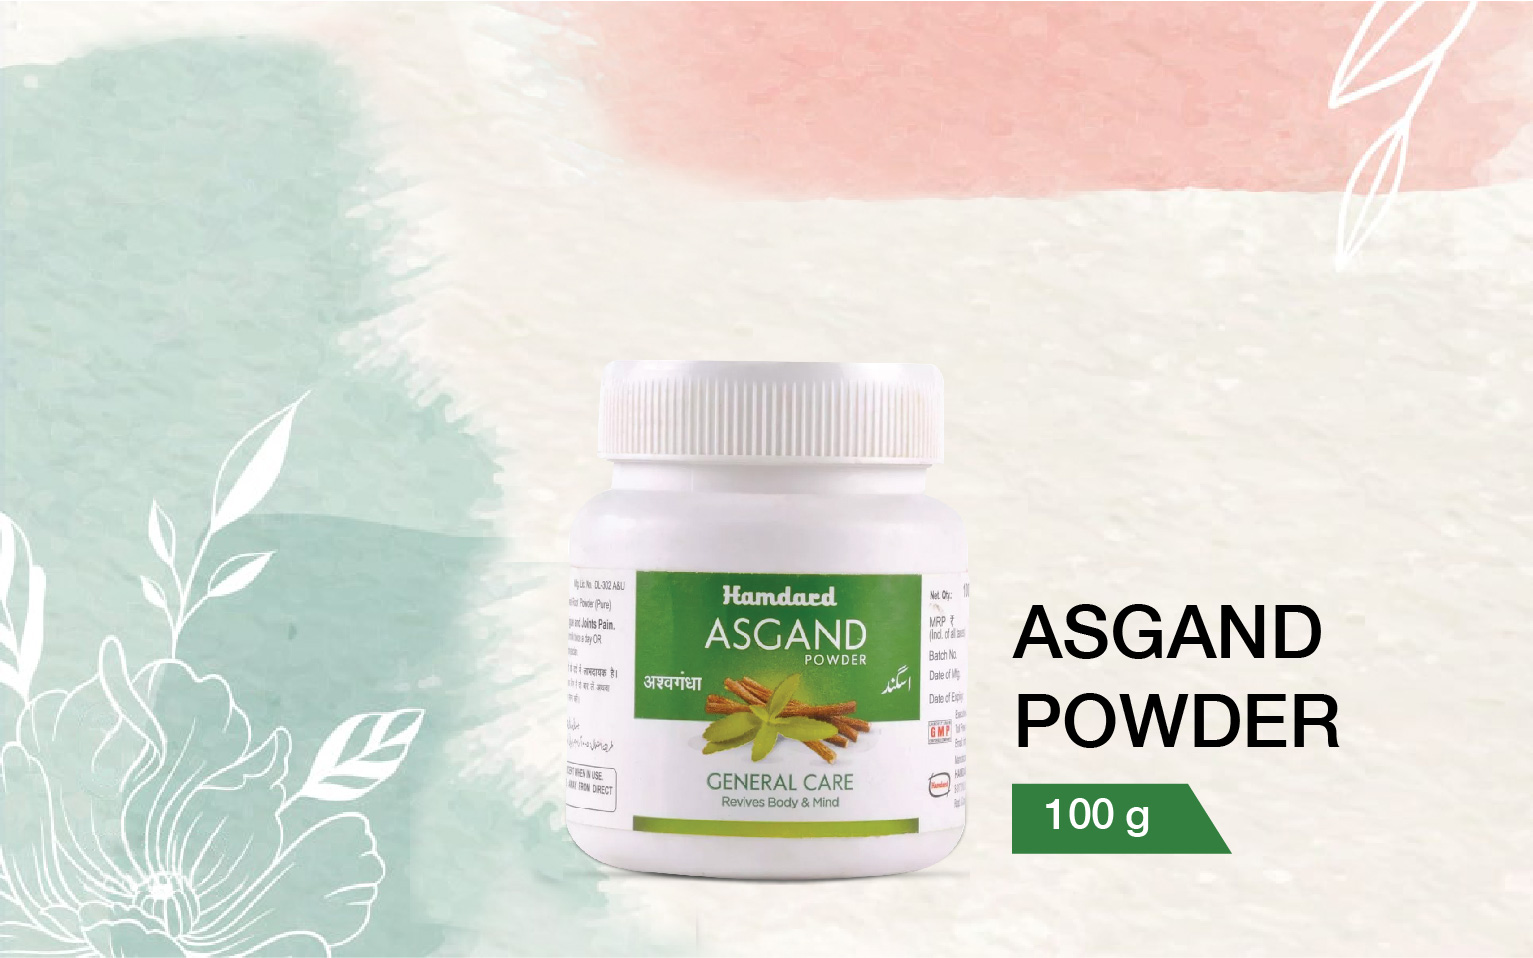 Asgand powder